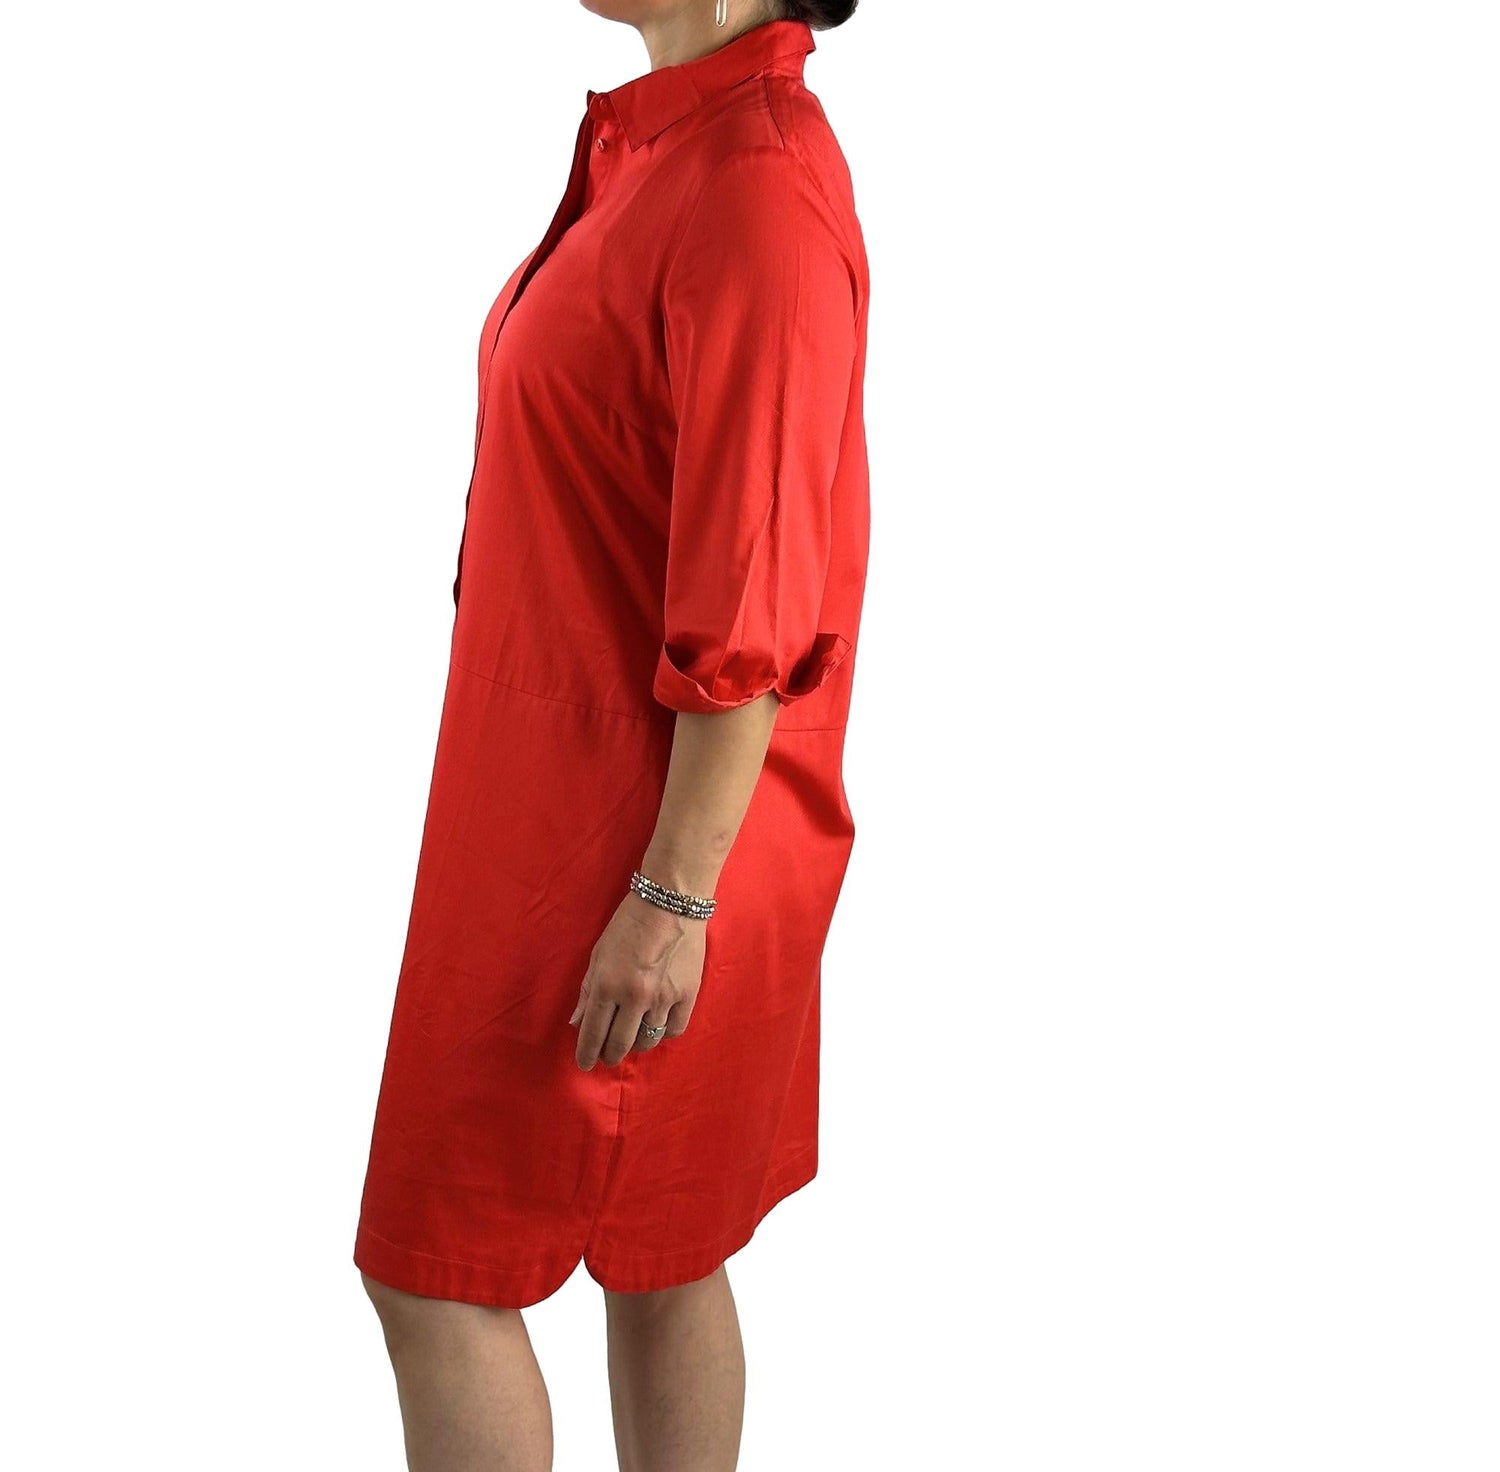 Hemdblusenkleid aus reiner Baumwolle. Mode von Betty Barclay